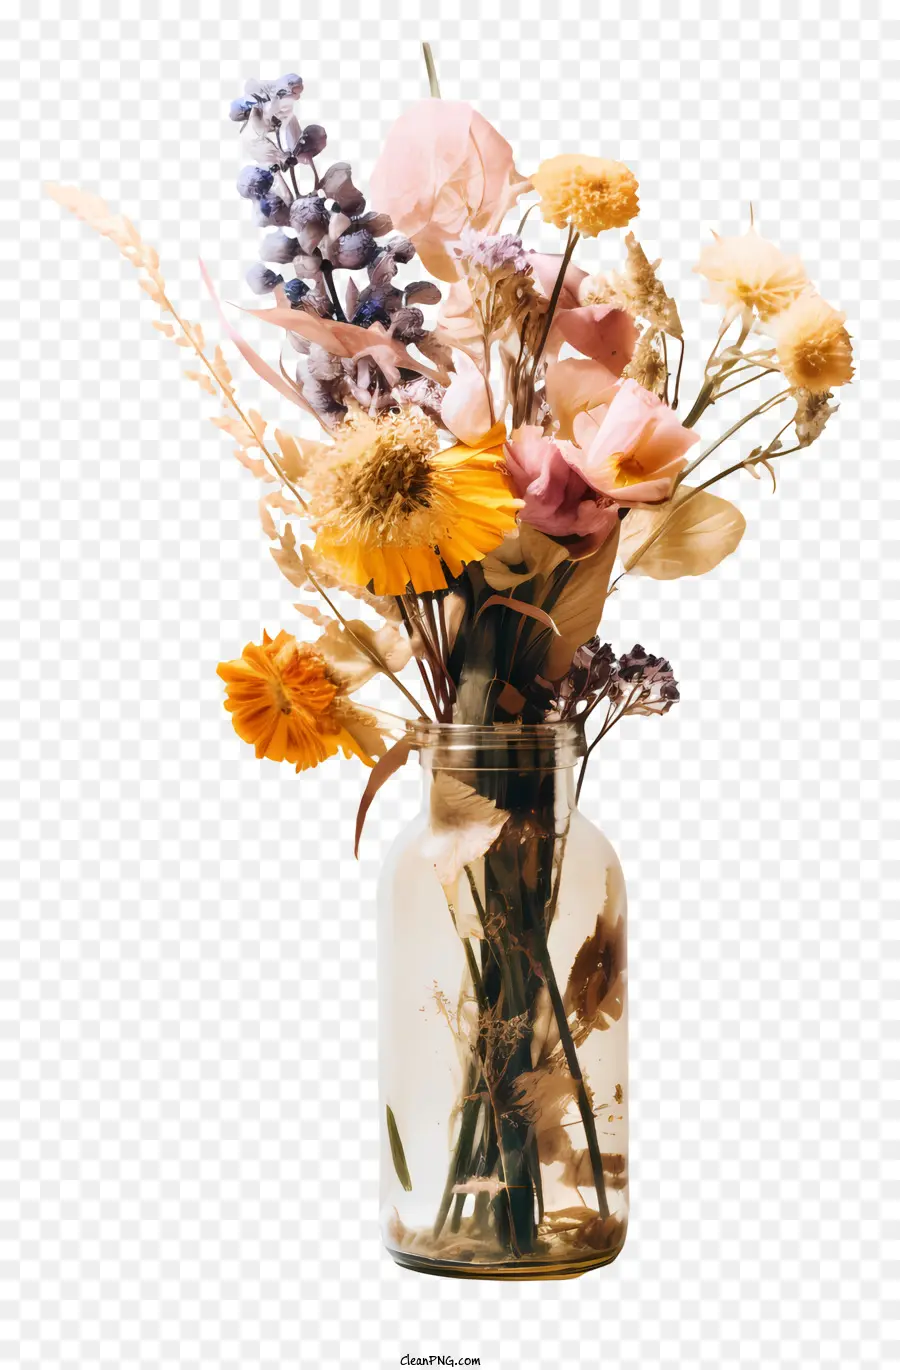 Trockenblumen - Bunt getrockneter Blumenstrauß in Glasvase